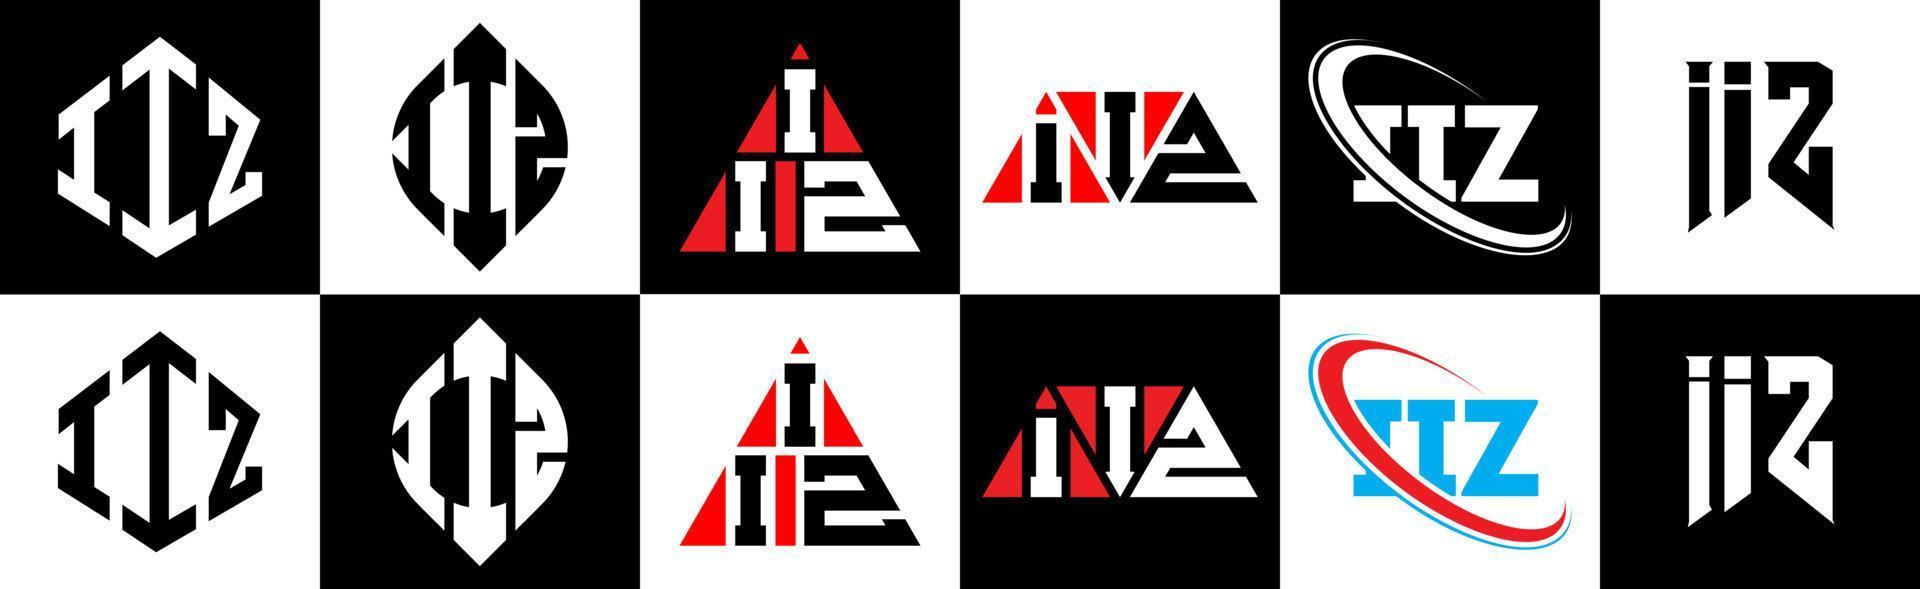 iiz lettera logo design nel sei stile. iiz poligono, cerchio, triangolo, esagono, piatto e semplice stile con nero e bianca colore variazione lettera logo impostato nel uno tavola da disegno. iiz minimalista e classico logo vettore